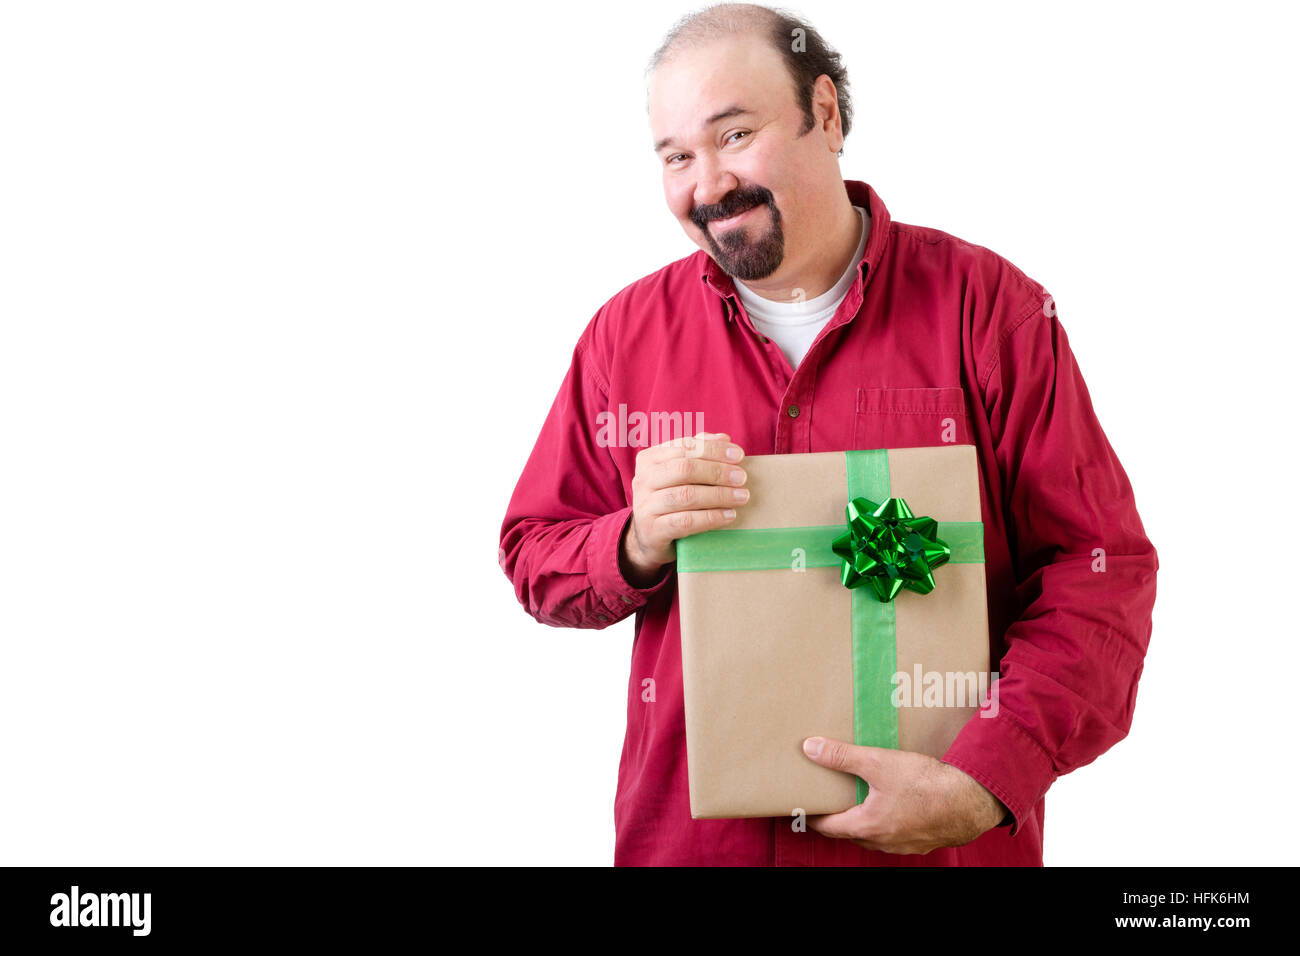 Dankbar, Mann, hält ein großes Geschenk mit ausgefallenen grünen Bogen, die er hat soeben in seinen Händen mit einem glücklichen Lächeln der Freude und Dank, Oberkörper ich Stockfoto